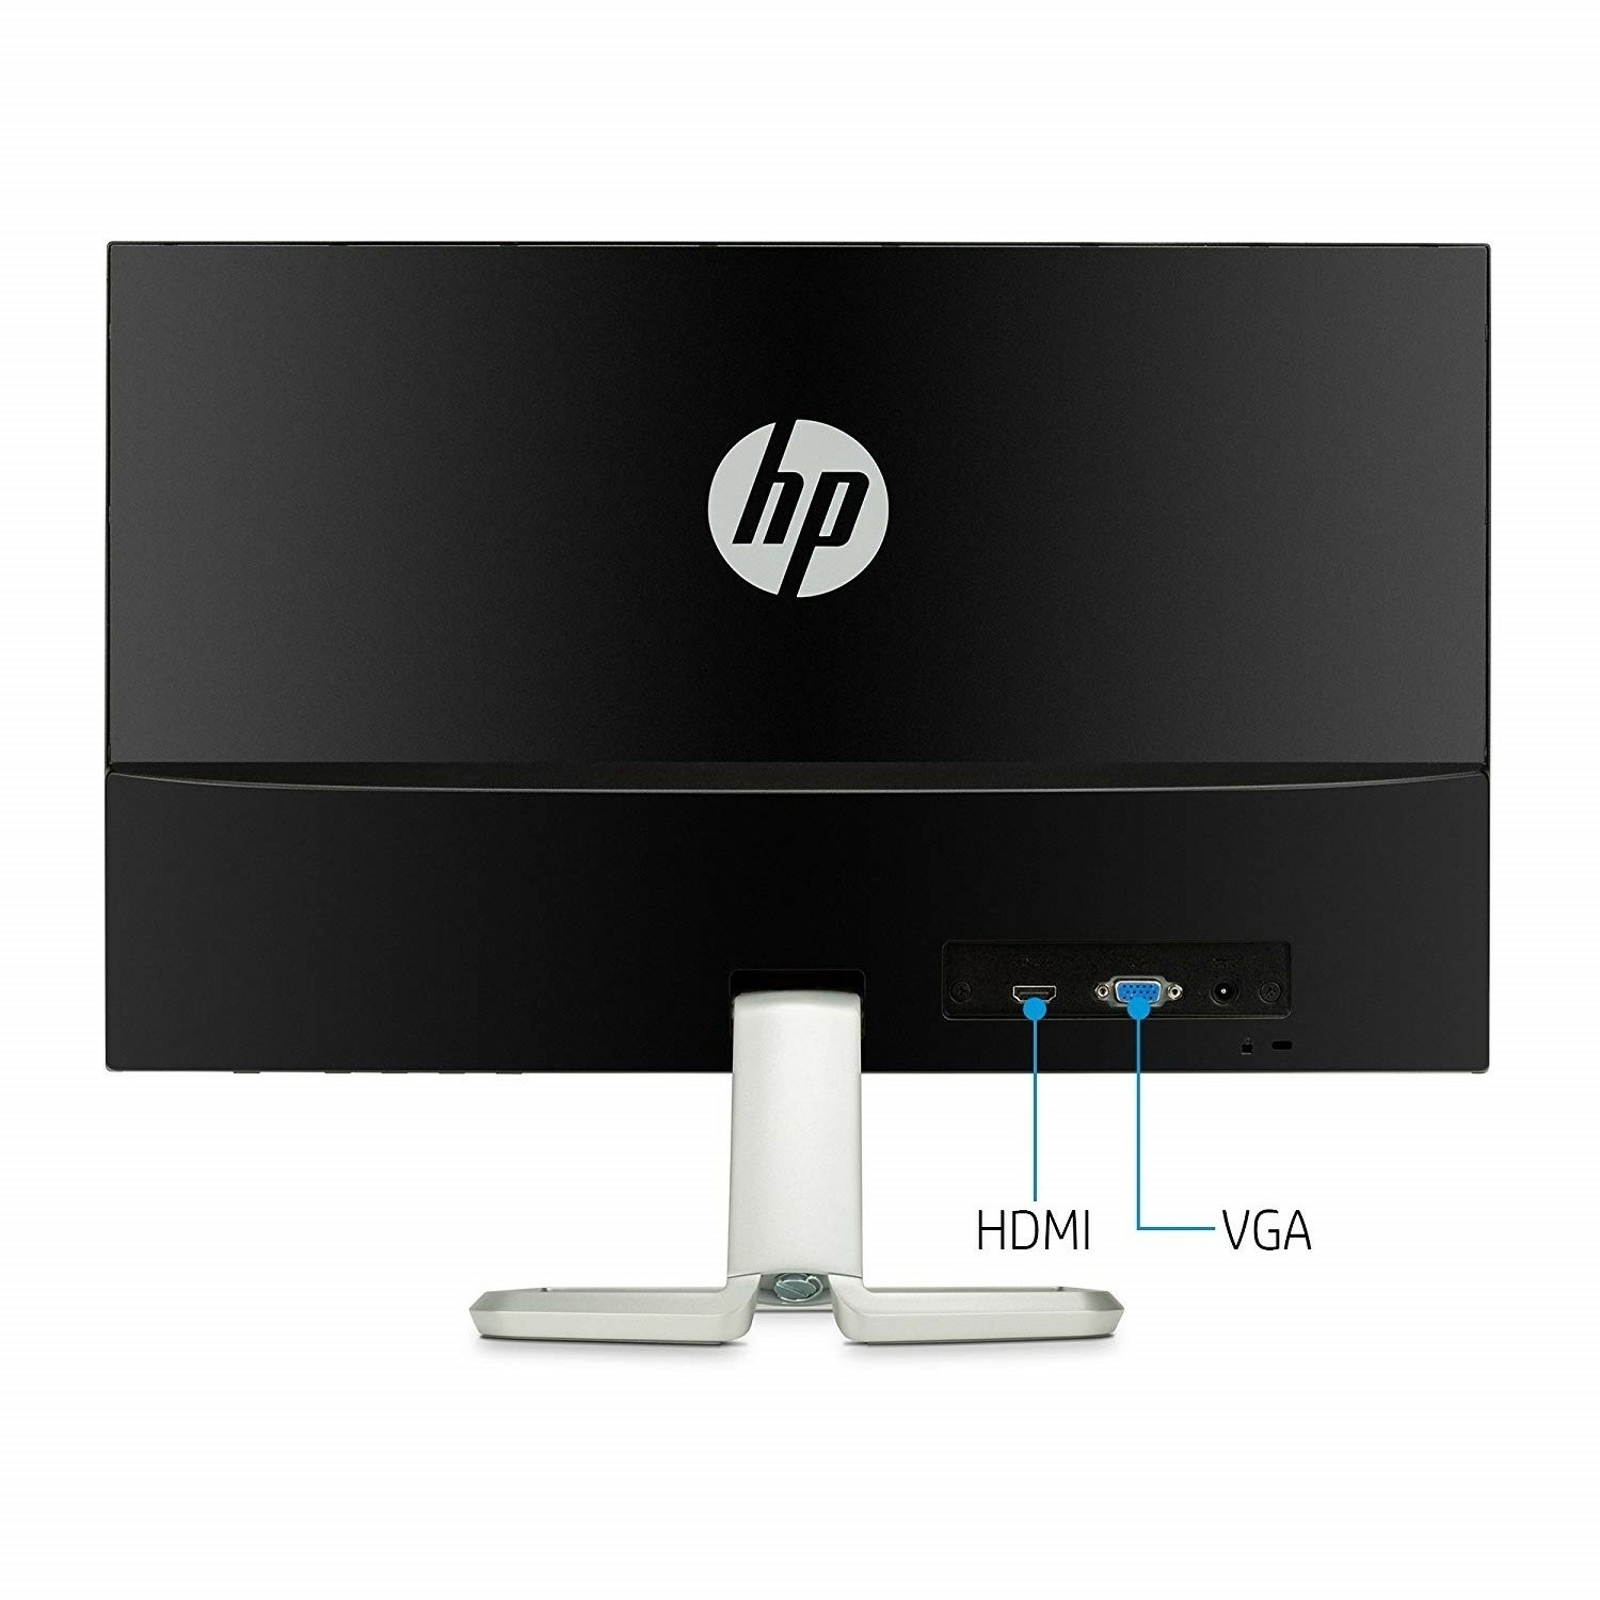 HP 22F 2XN58AA 21.5" 5MS 1920x1080 VGA/HDMI IPS LED MONITOR